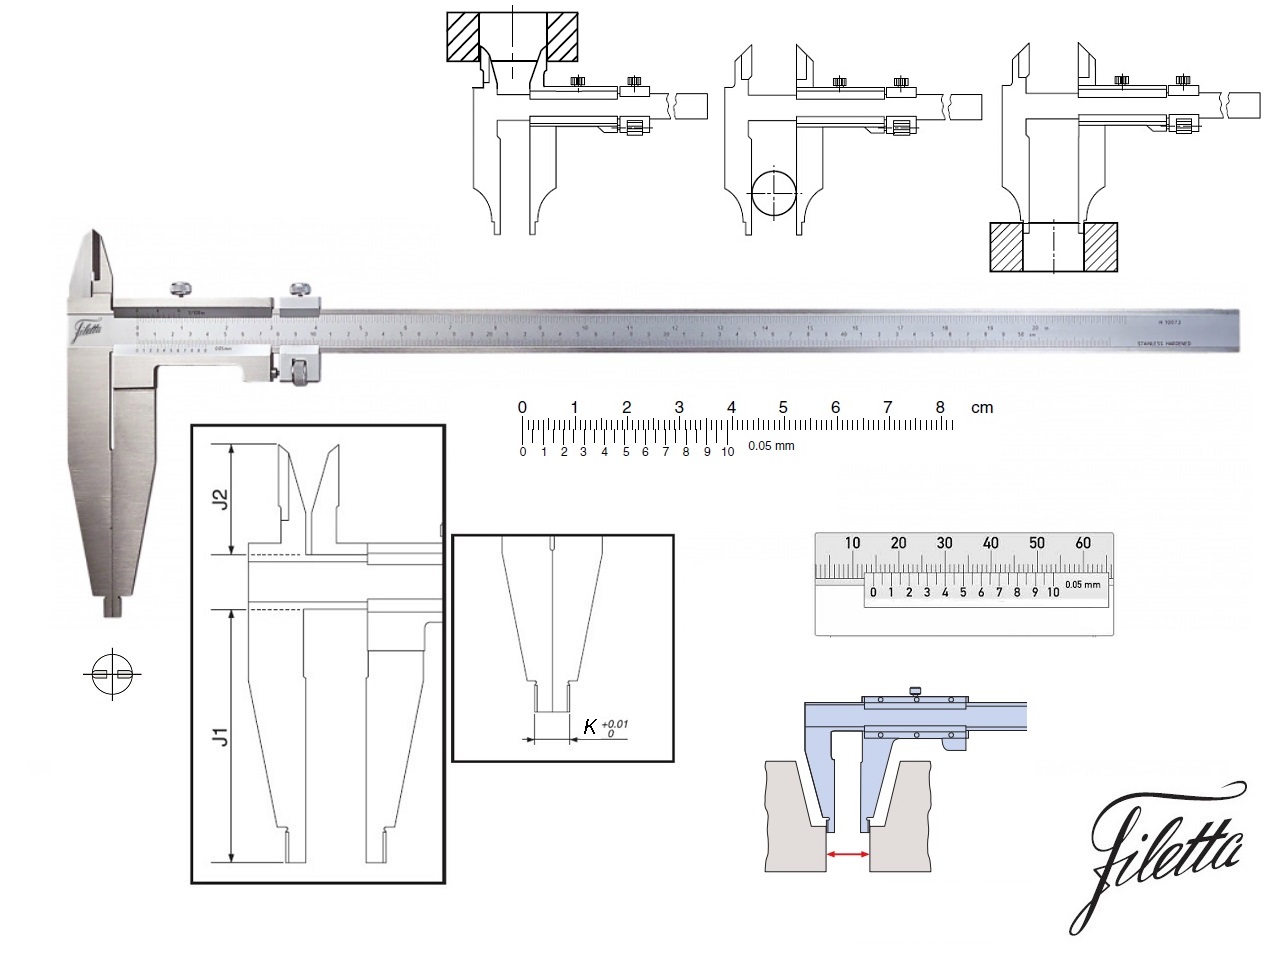 Posuvné měřítko Filetta 0-1000 mm, čelisti 150 mm, s měřicími nožíky pro vnitřní měření